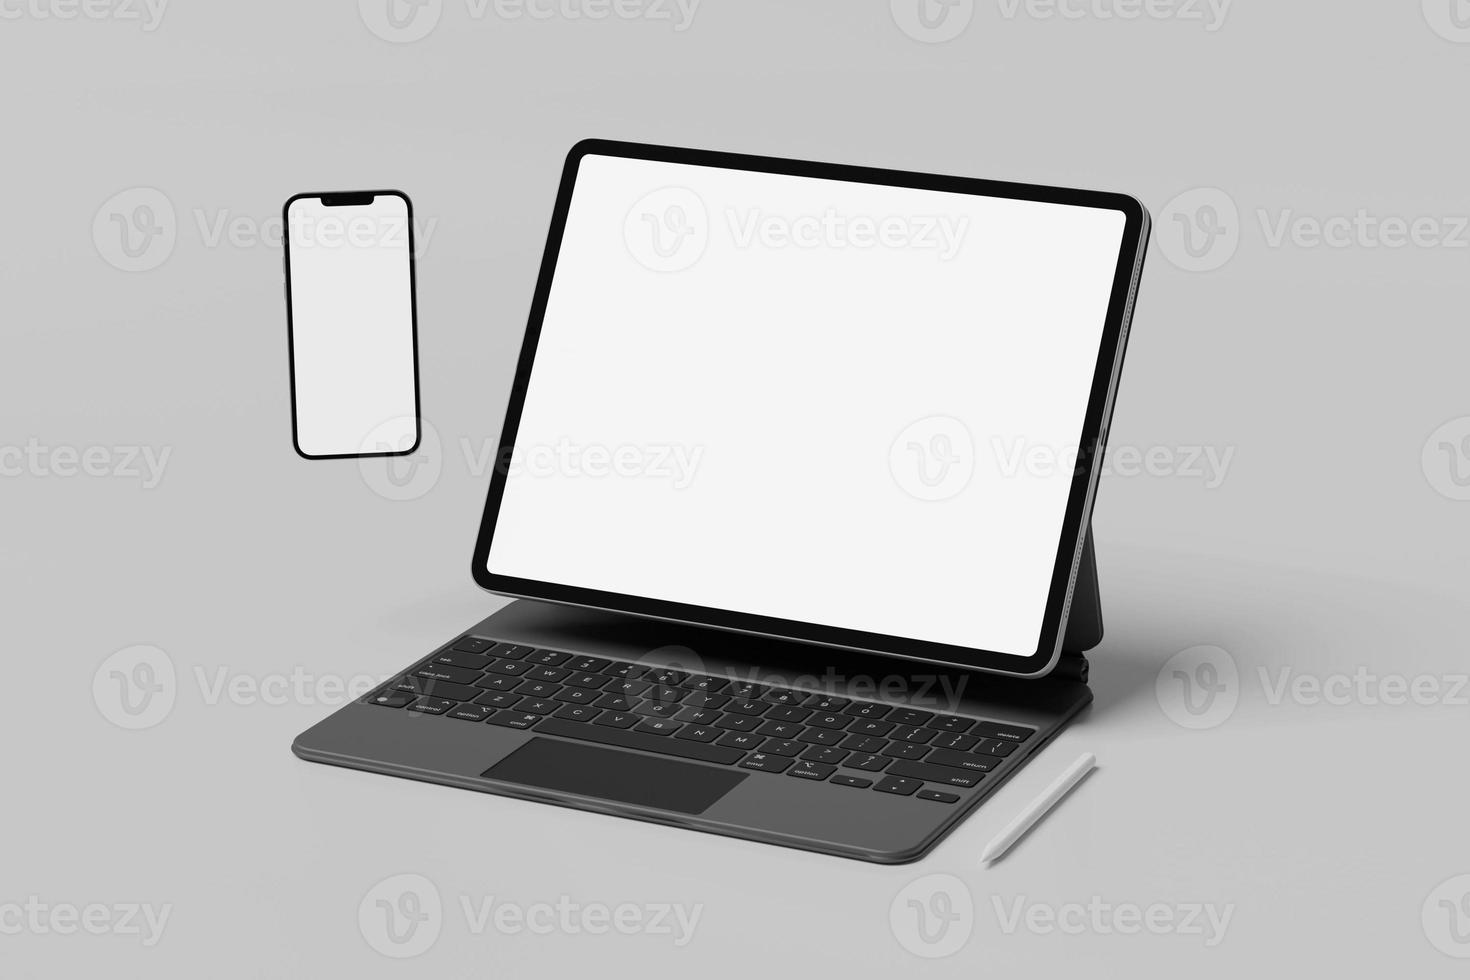 tela do tablet com maquetes em branco do smartphone foto